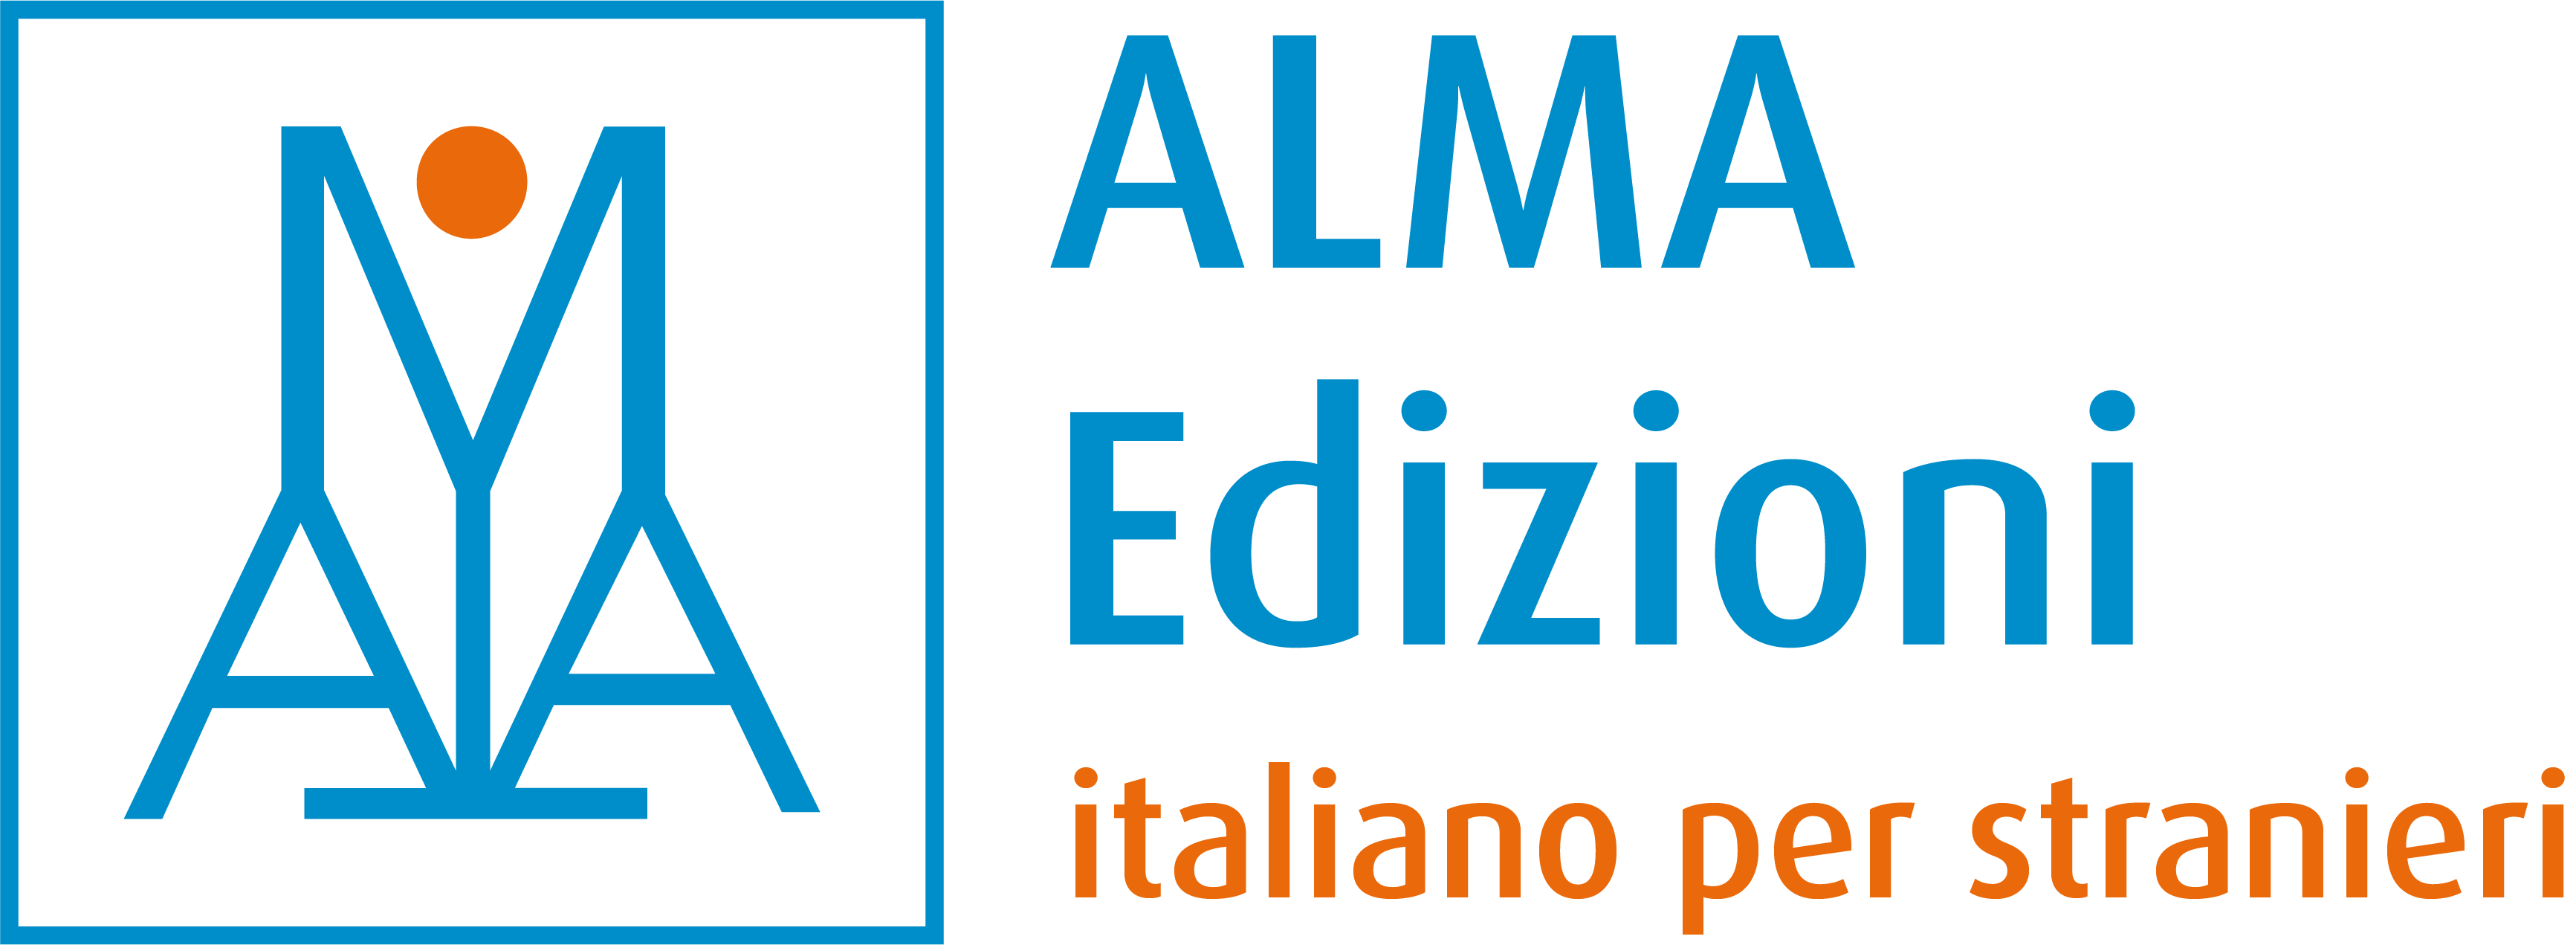 Imparare l'italiano: insegnare l'italiano a stranieri - ALMA EDIZIONI